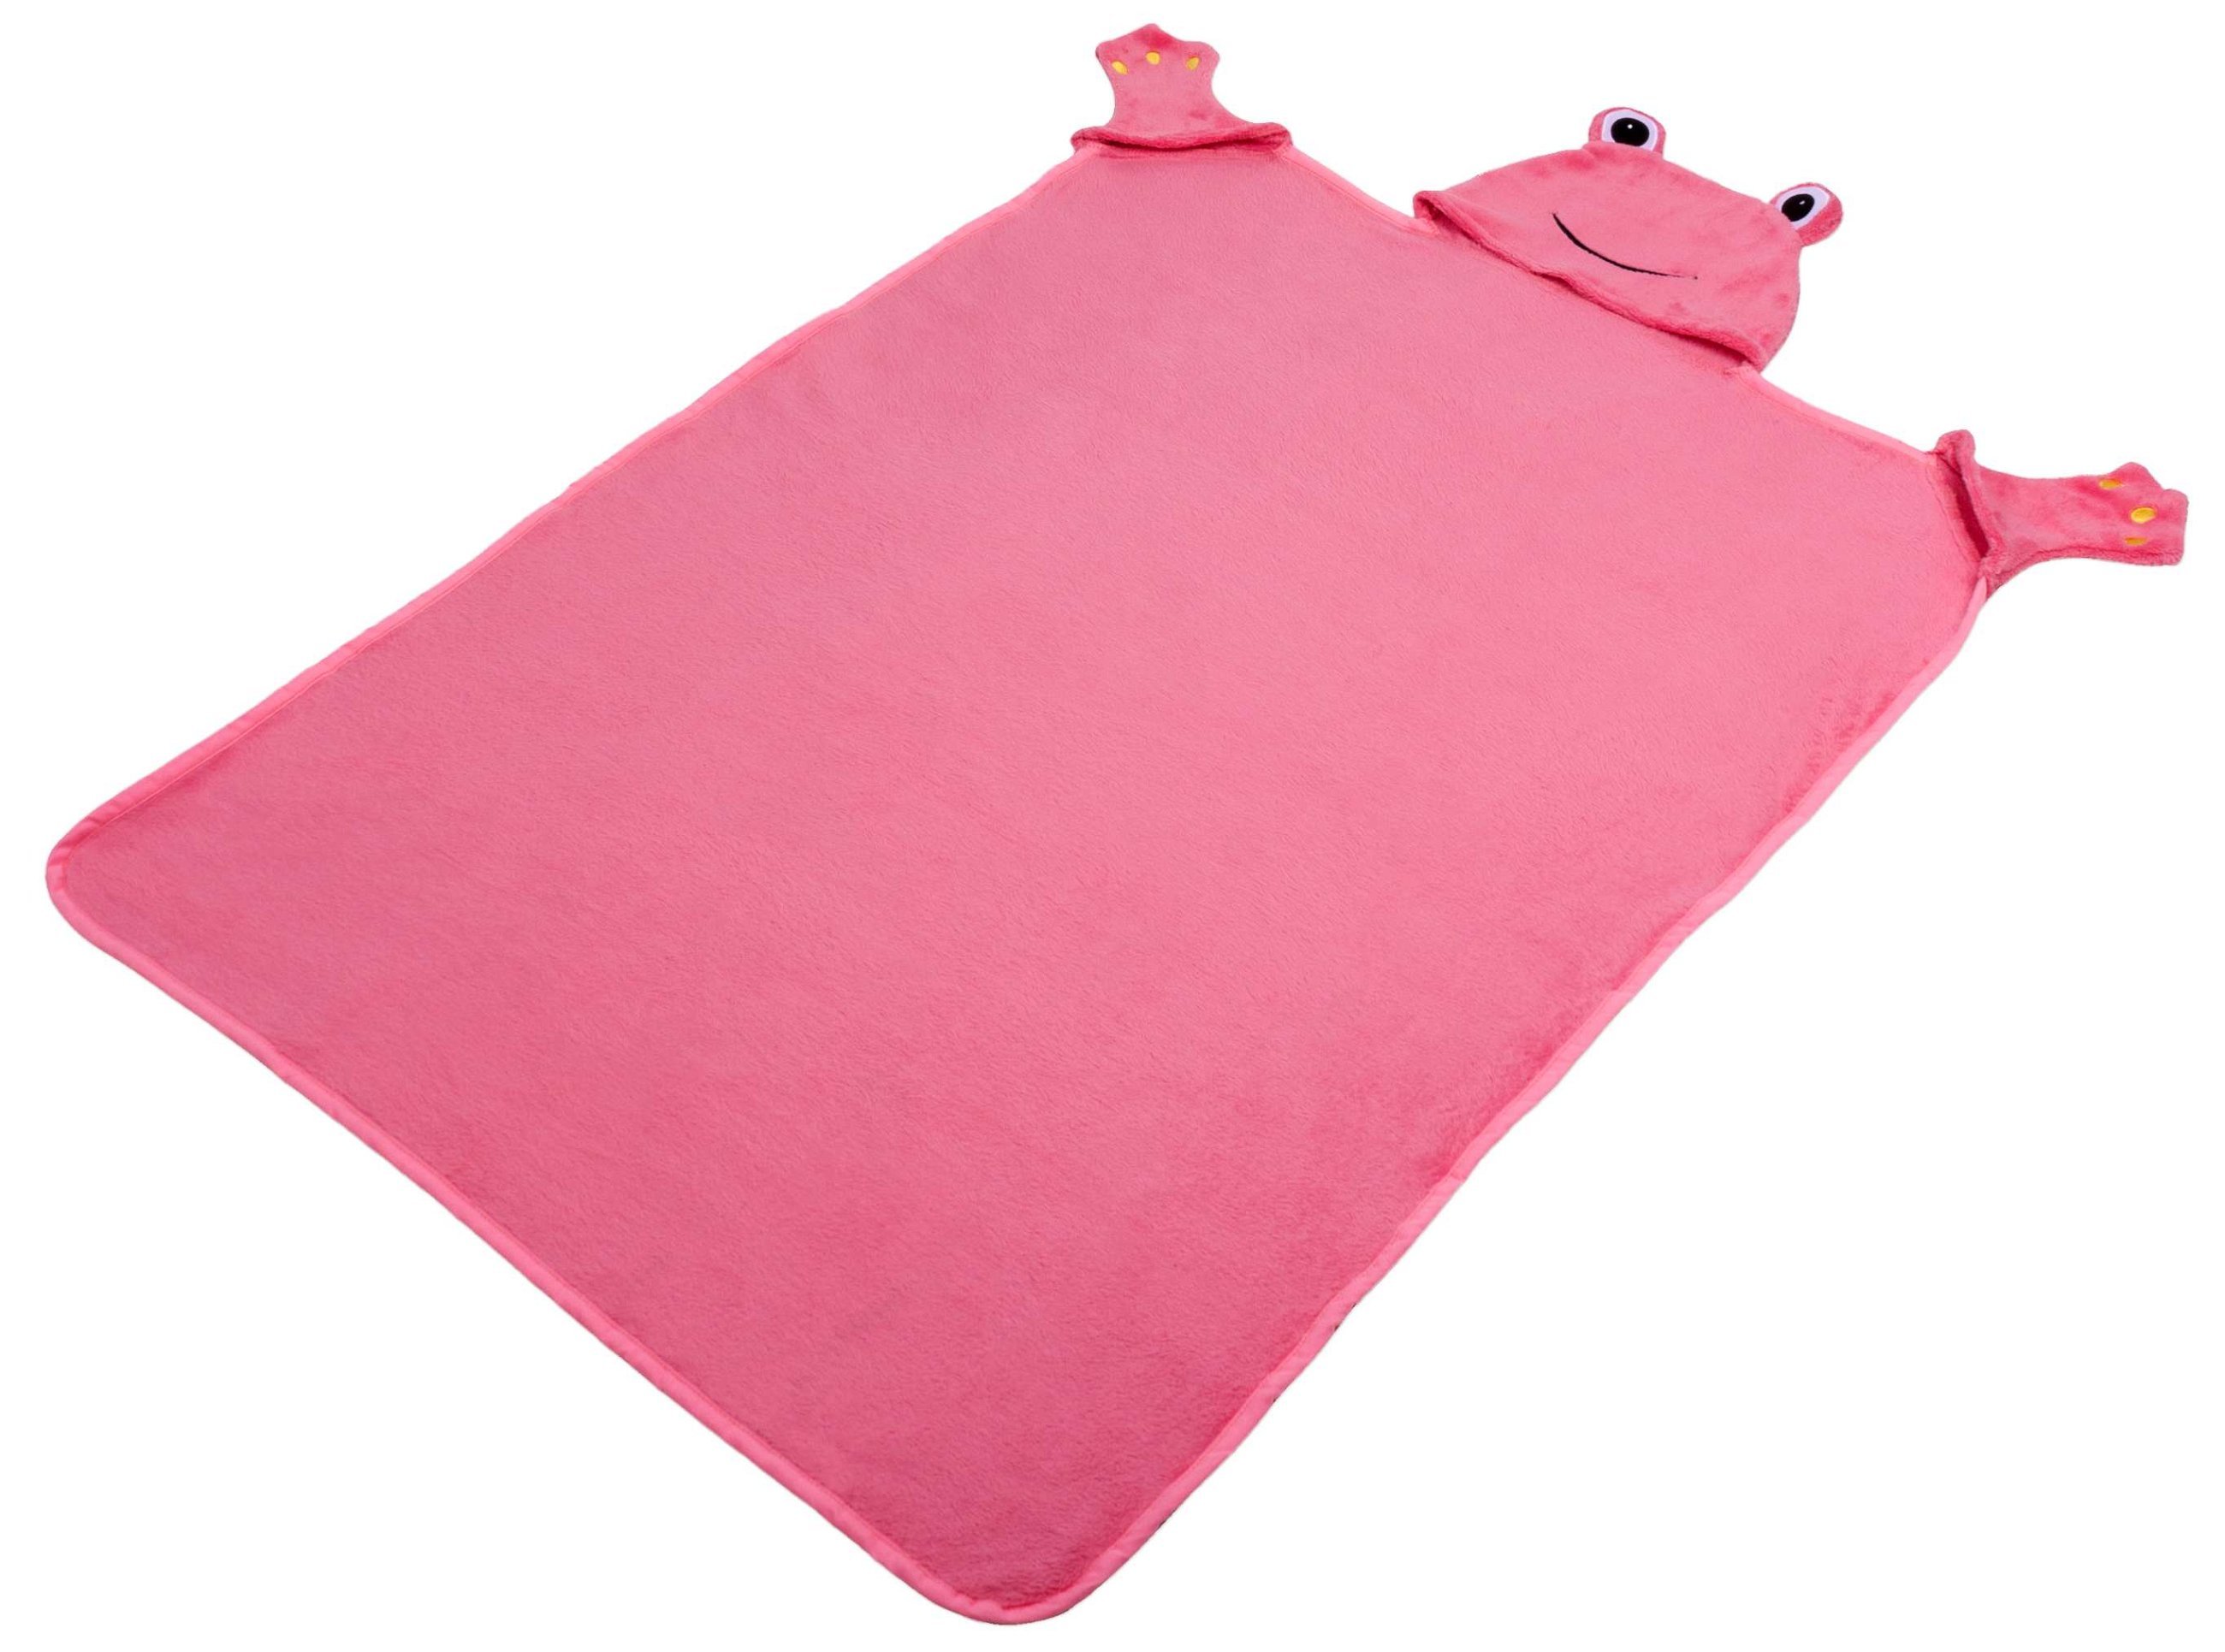 coperta per bambini Froggy rosa 130 x 100 cm